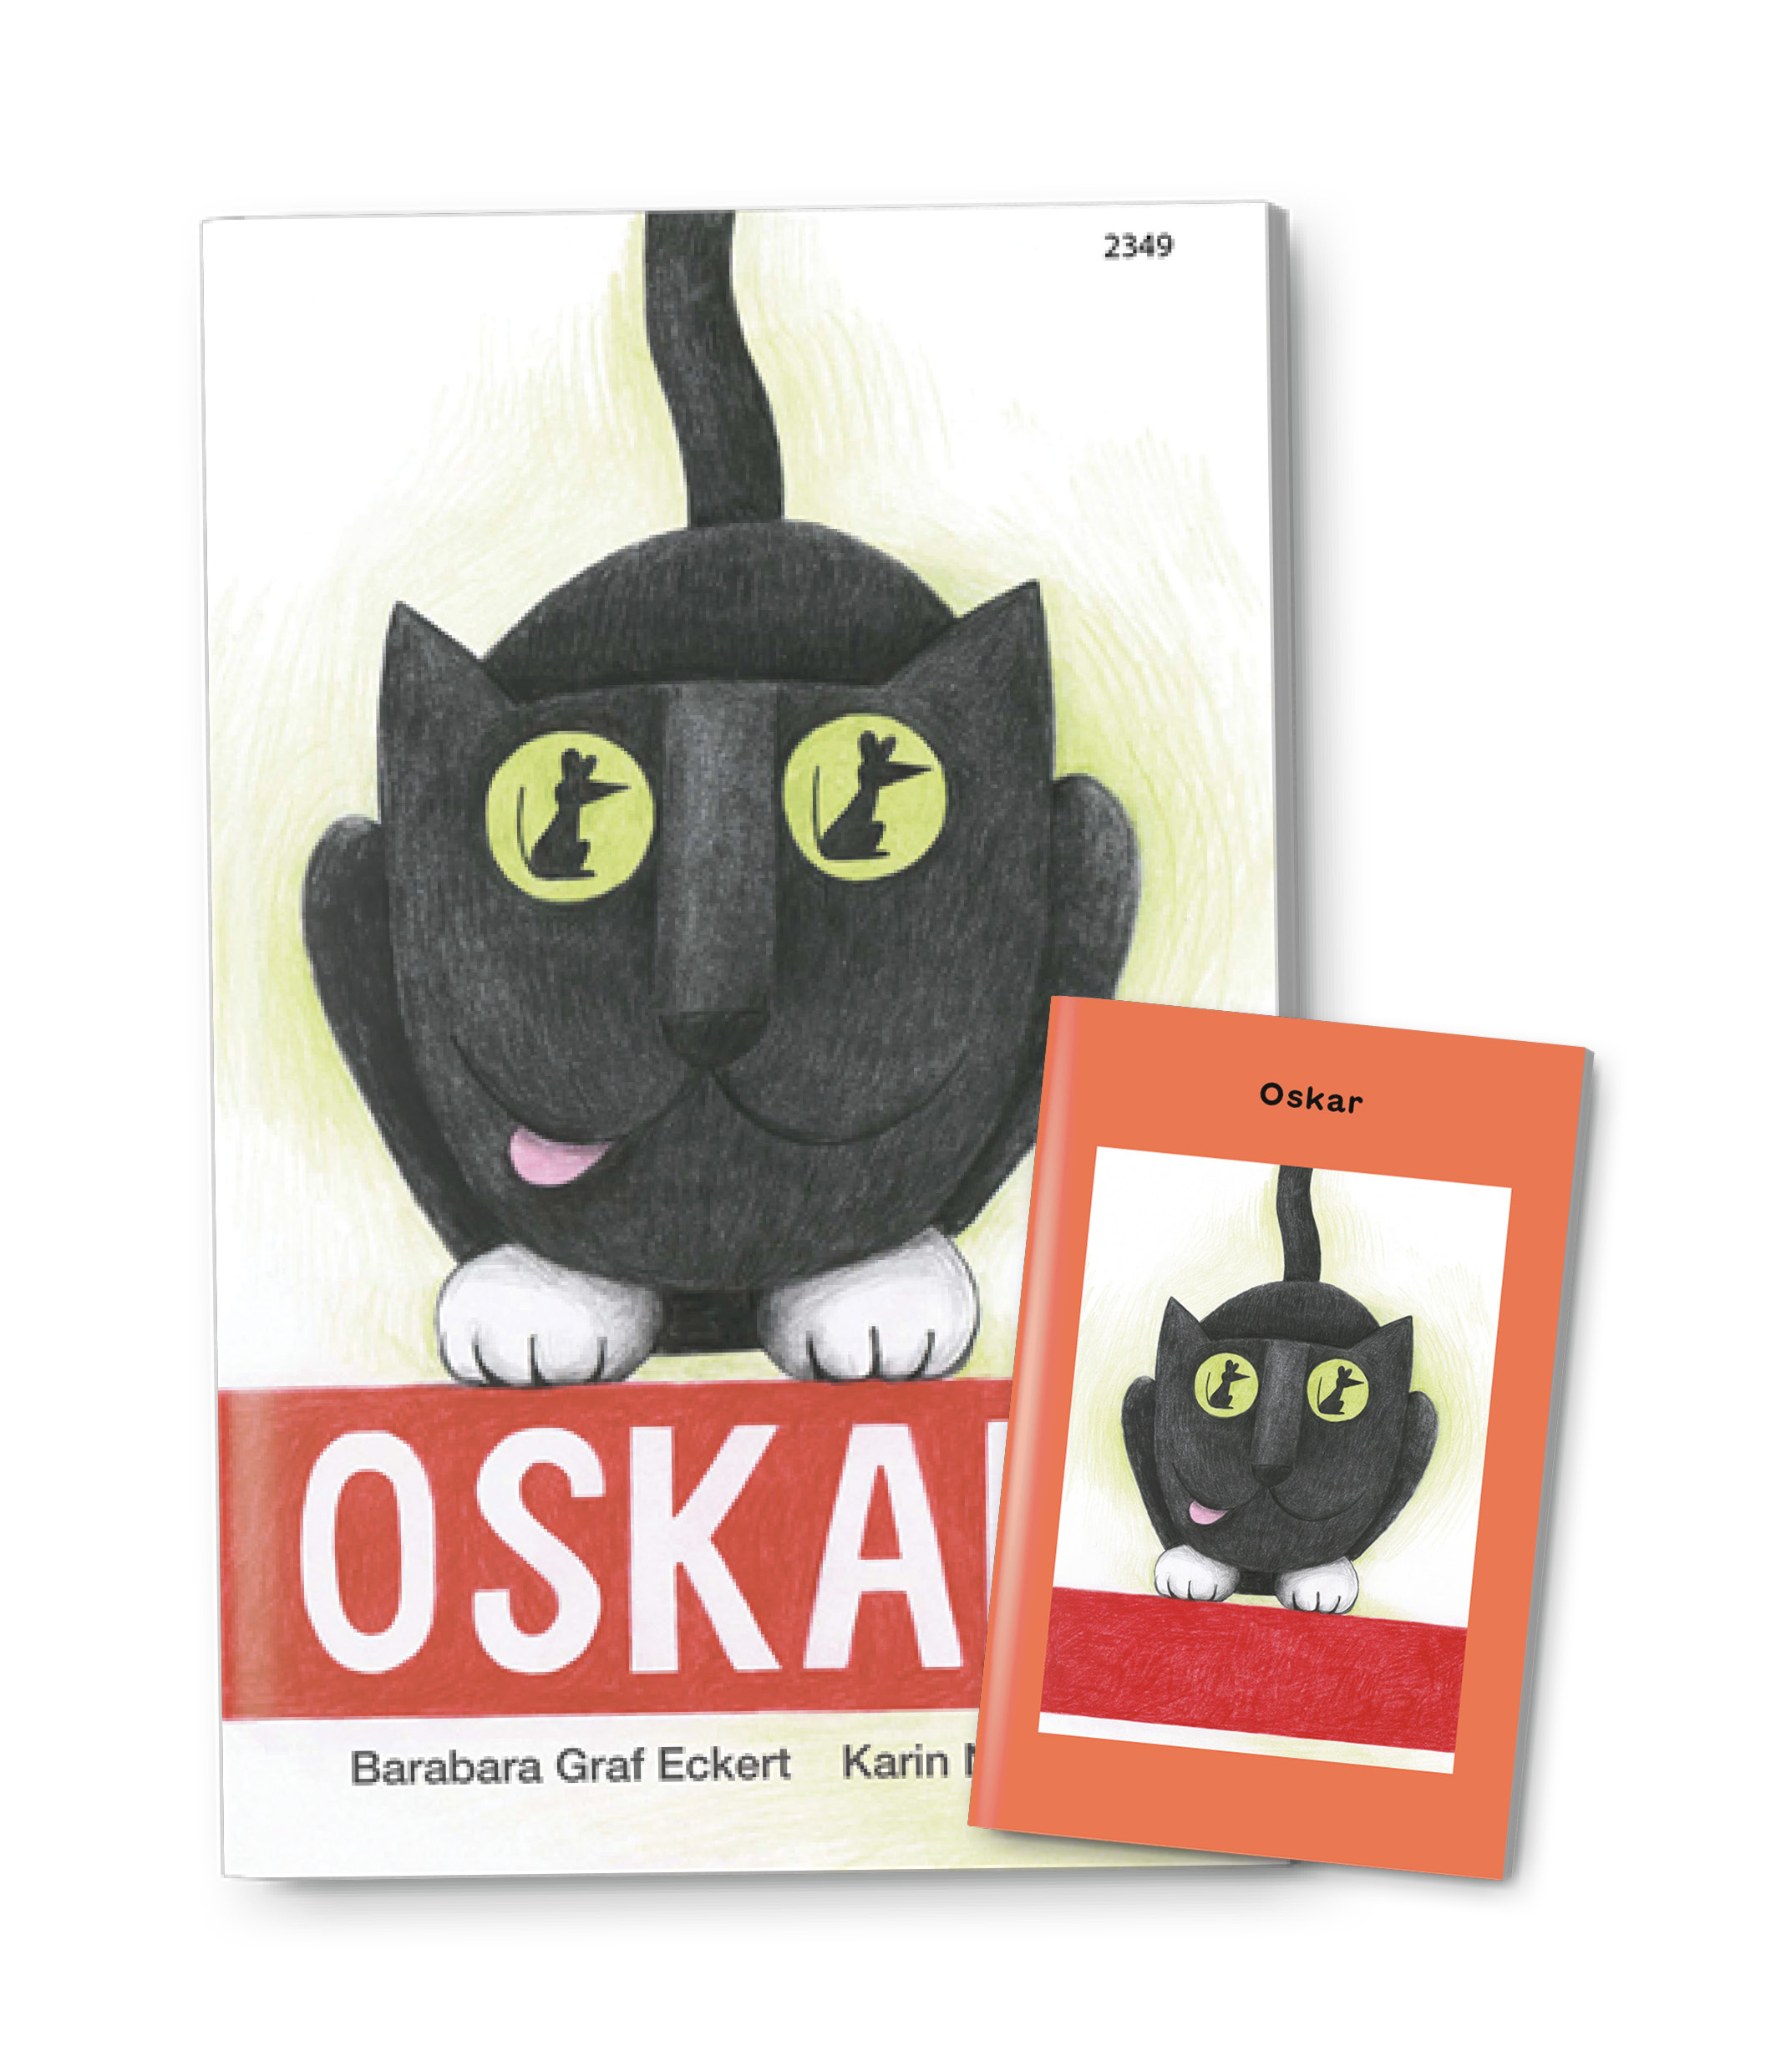 Oskar, ein Kinderbuch von Barbara Graf Eckert, Illustration von Karin Negele, SJW Verlag, Zahlengeschichte